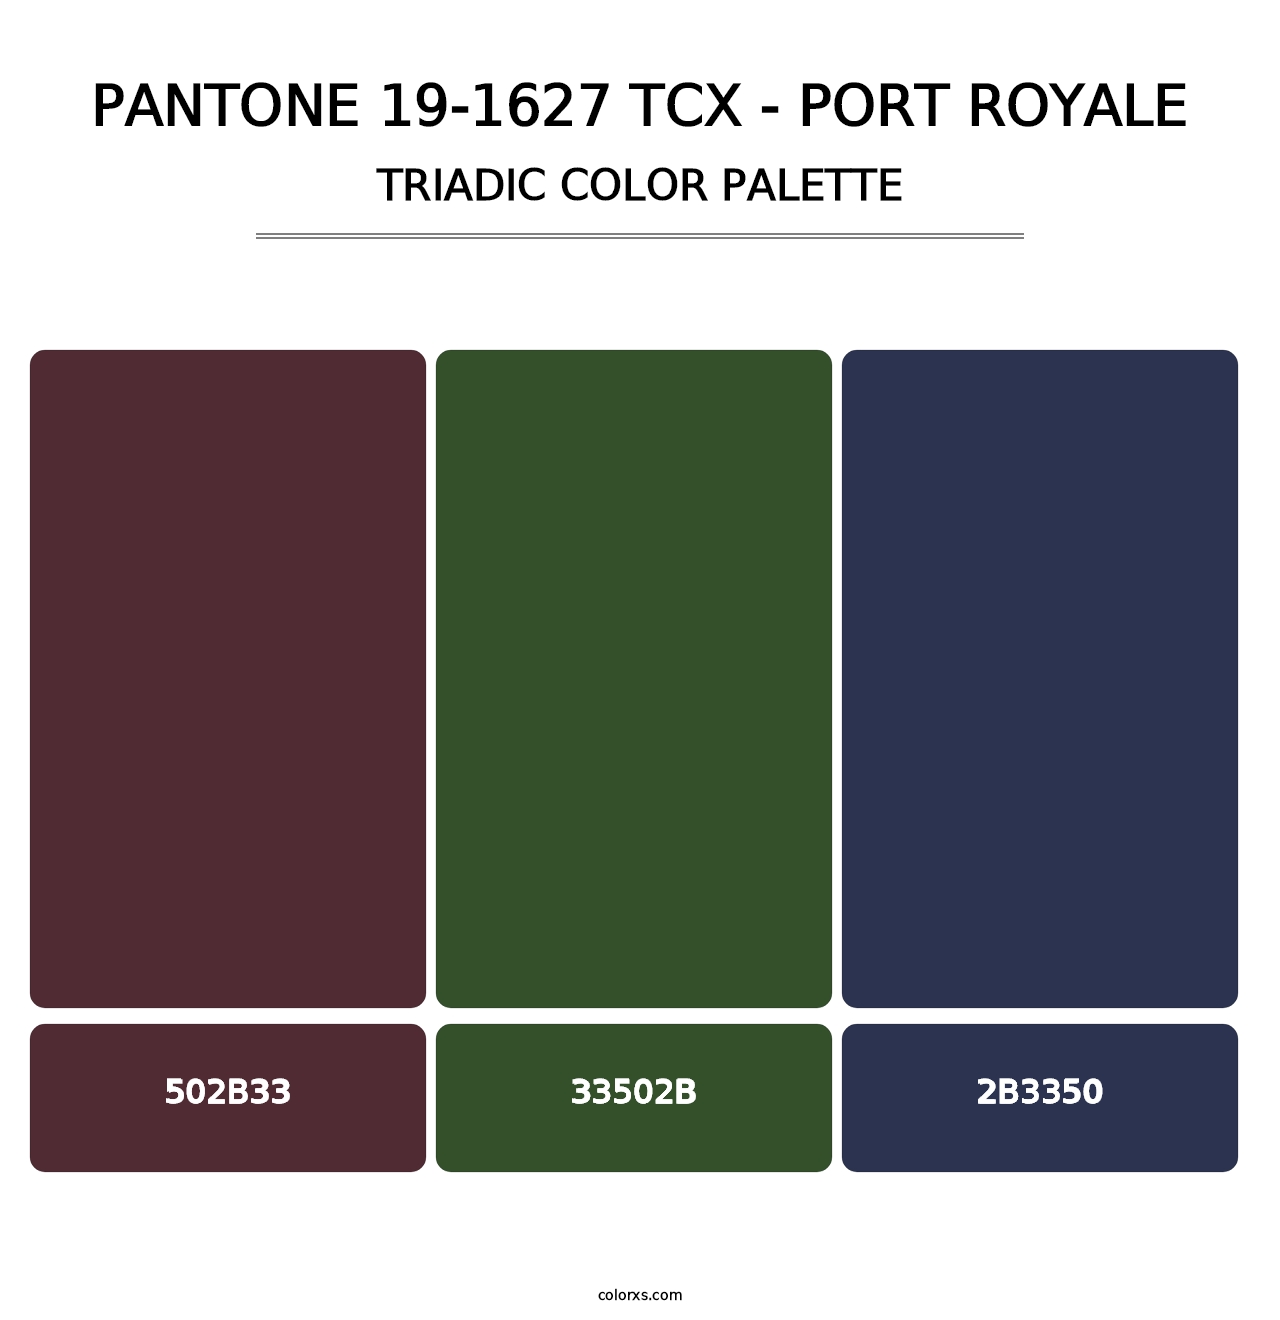 PANTONE 19-1627 TCX - Port Royale - Triadic Color Palette